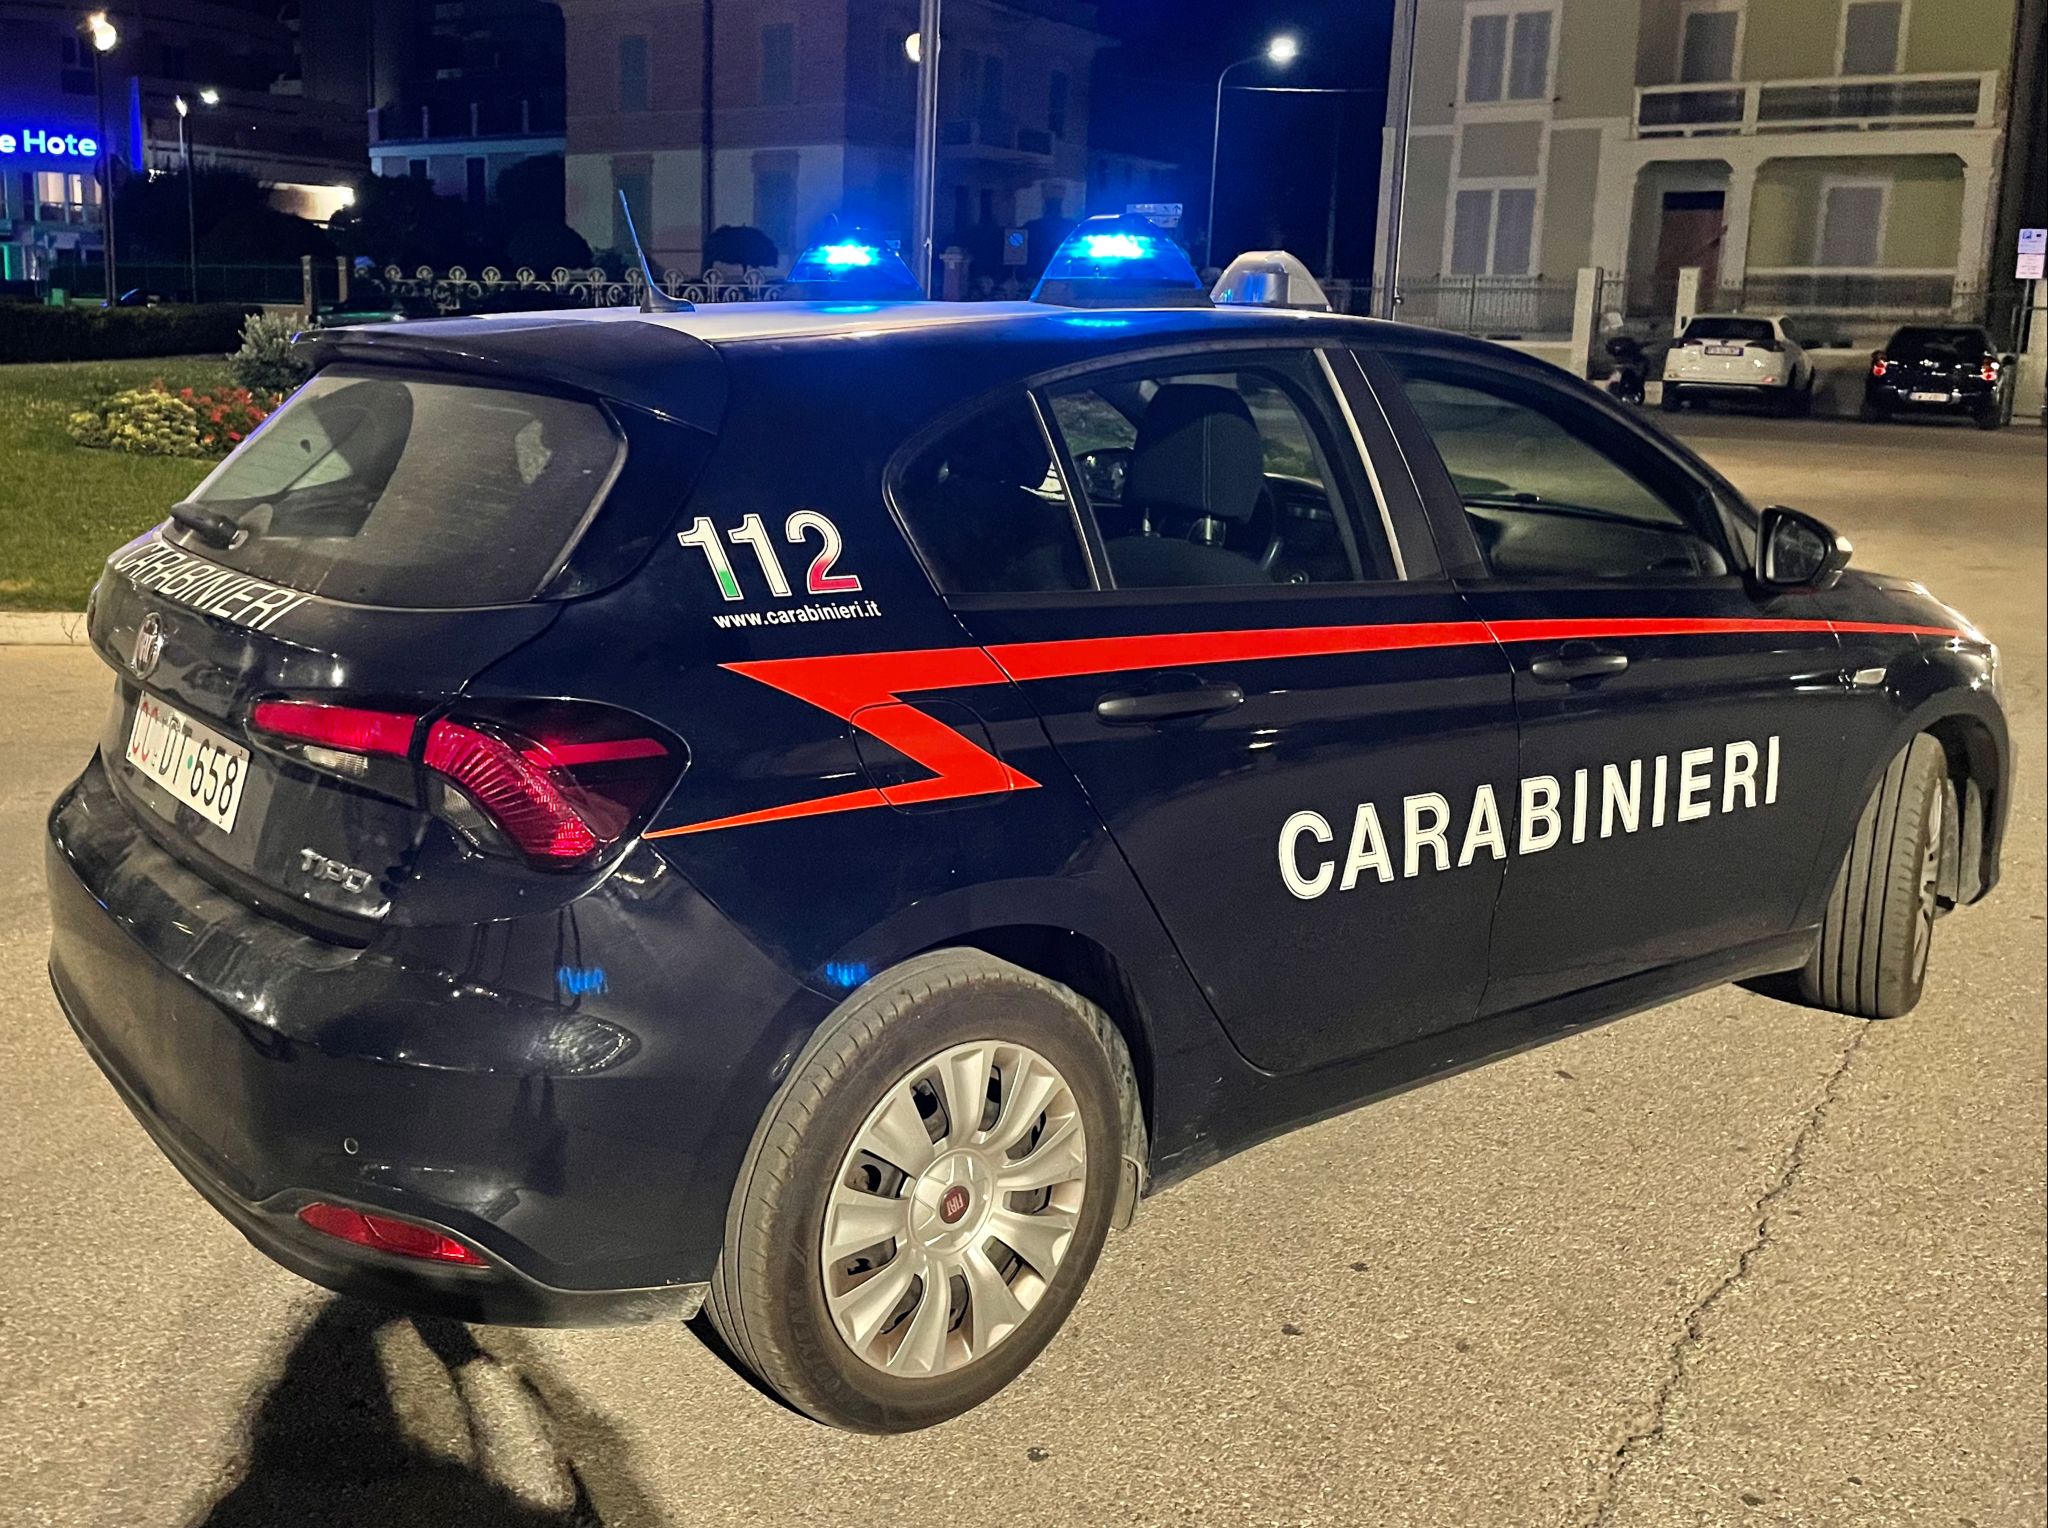 Tragedia a San Severino: 83enne trovata morta in casa, potrebbe essere stata uccisa dal figlio